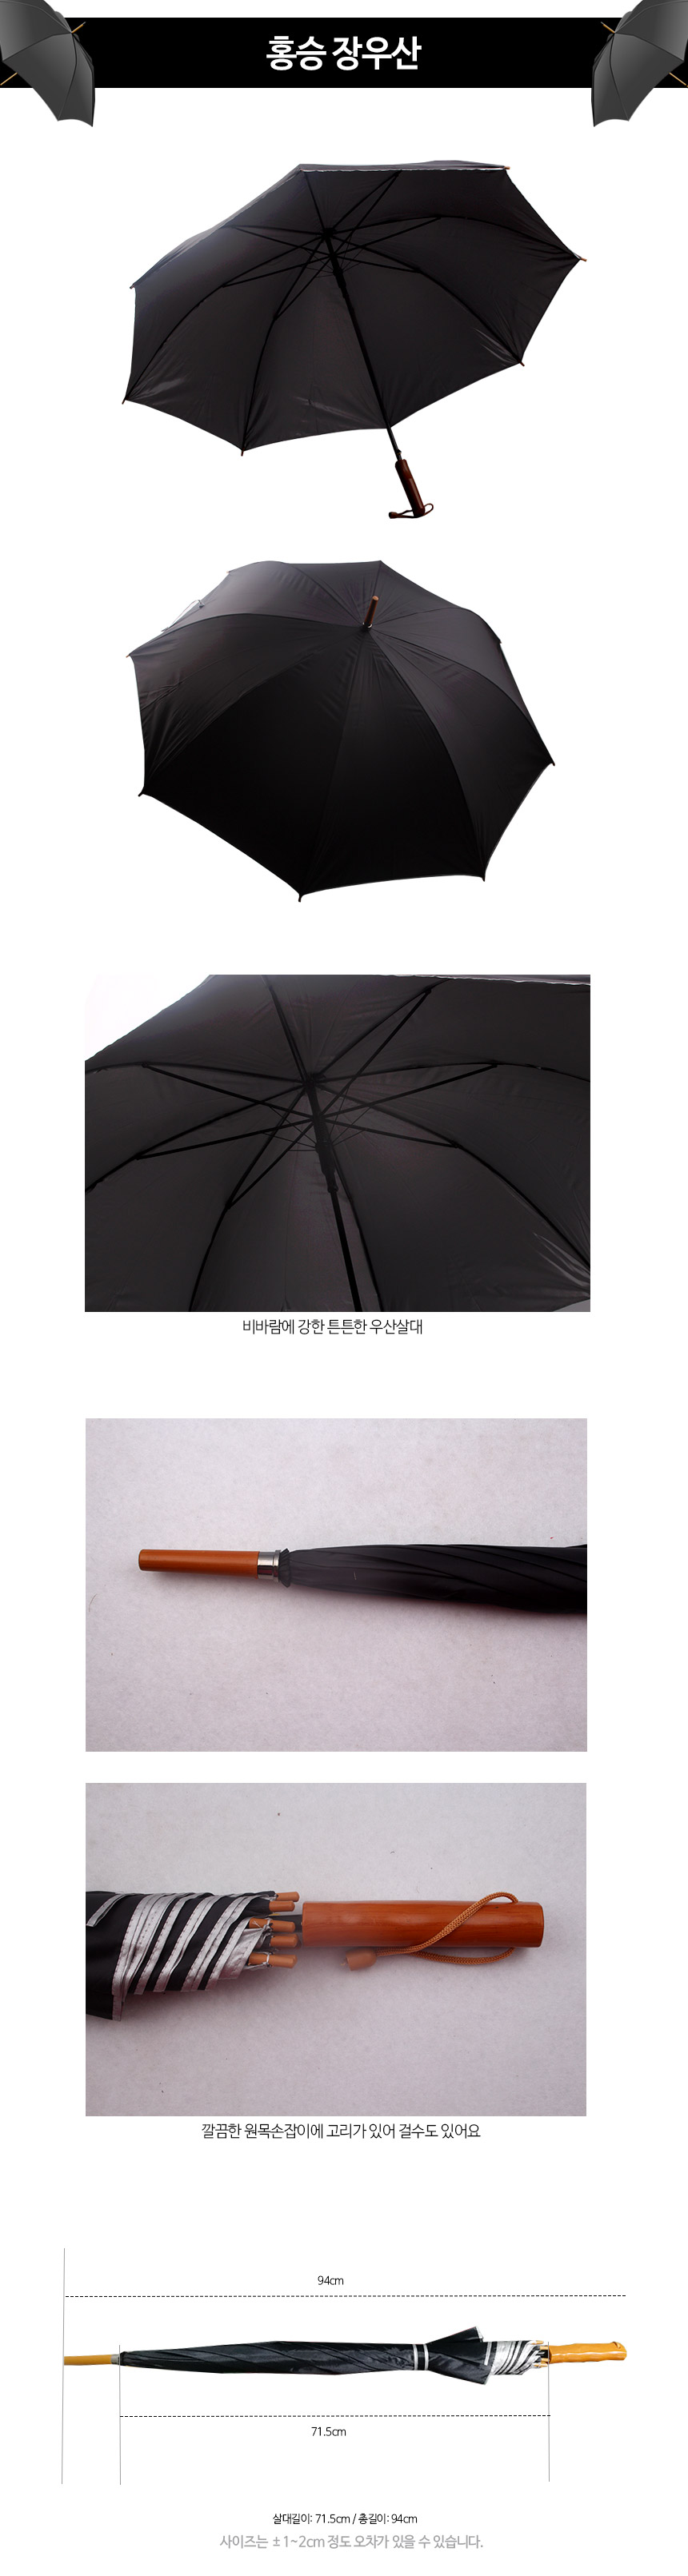 hongs_umbrella.jpg